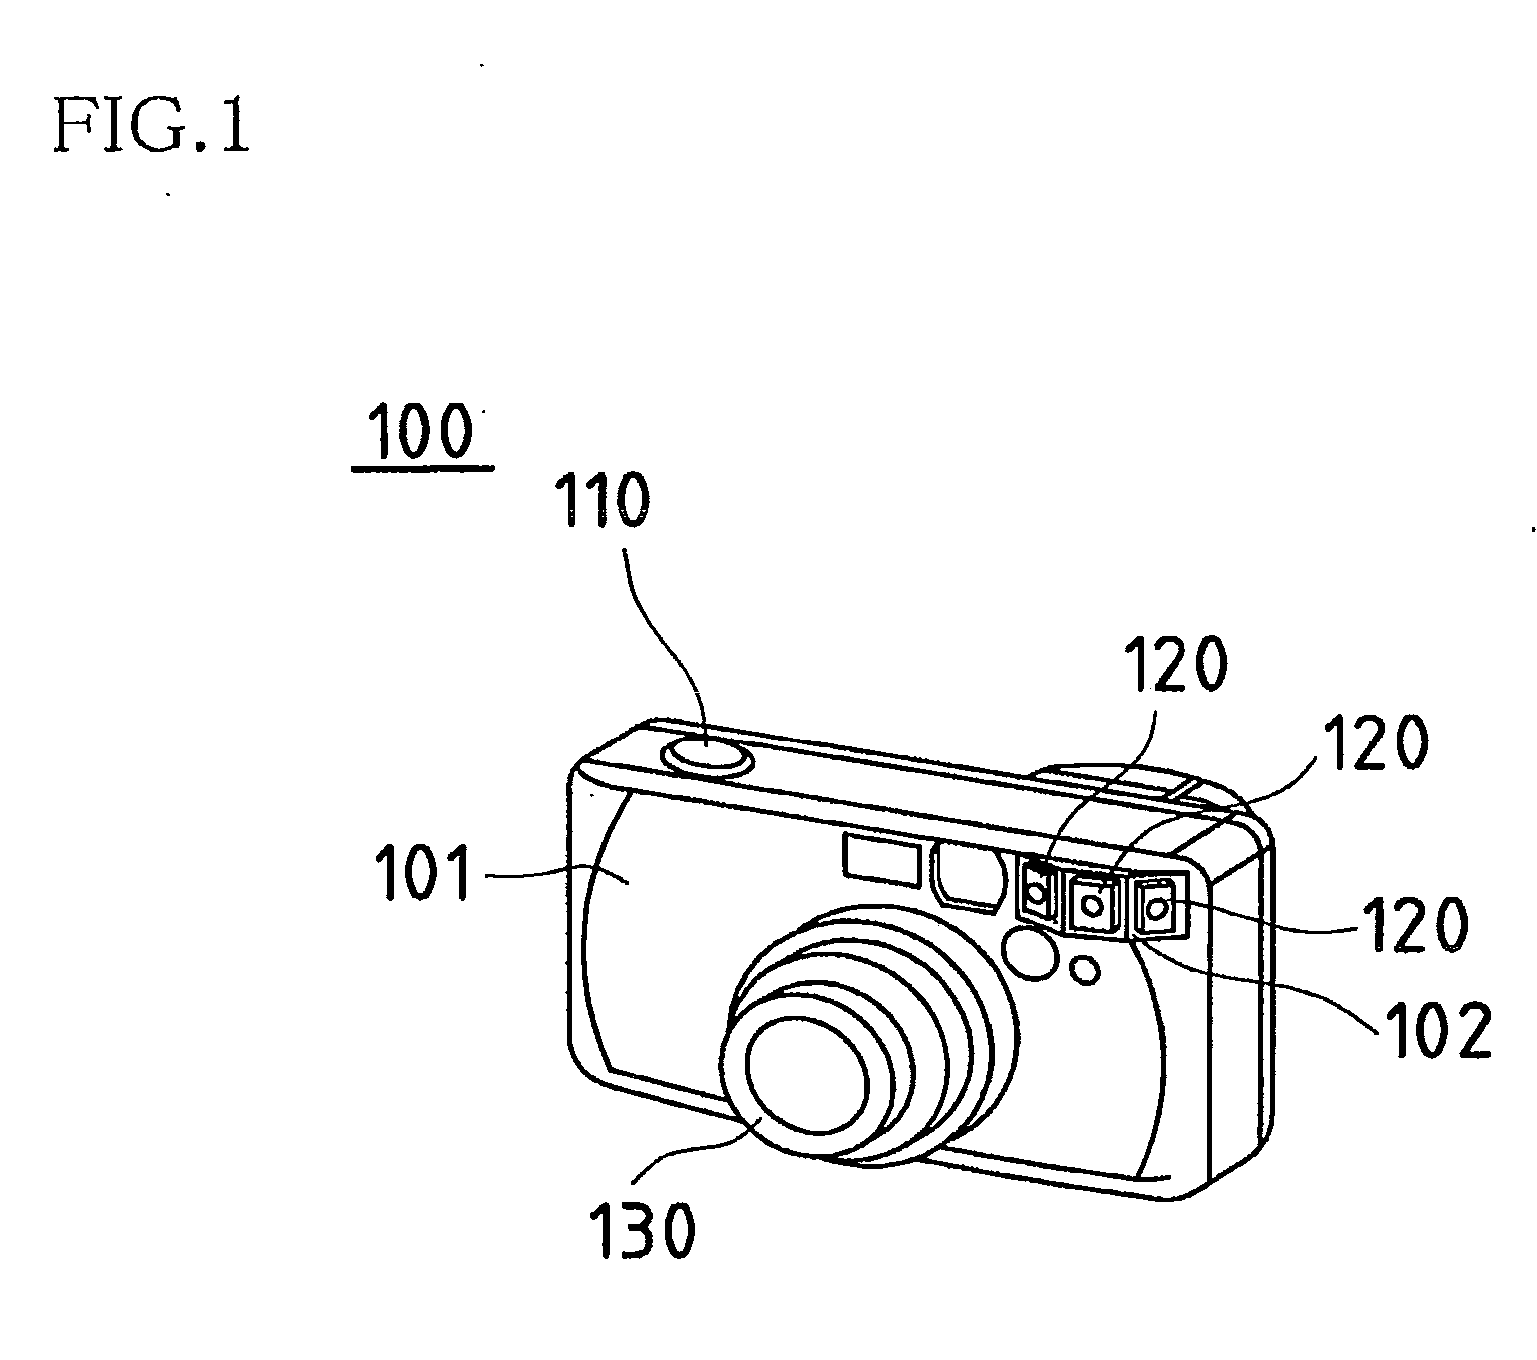 Image capturing device having pulsed LED flash